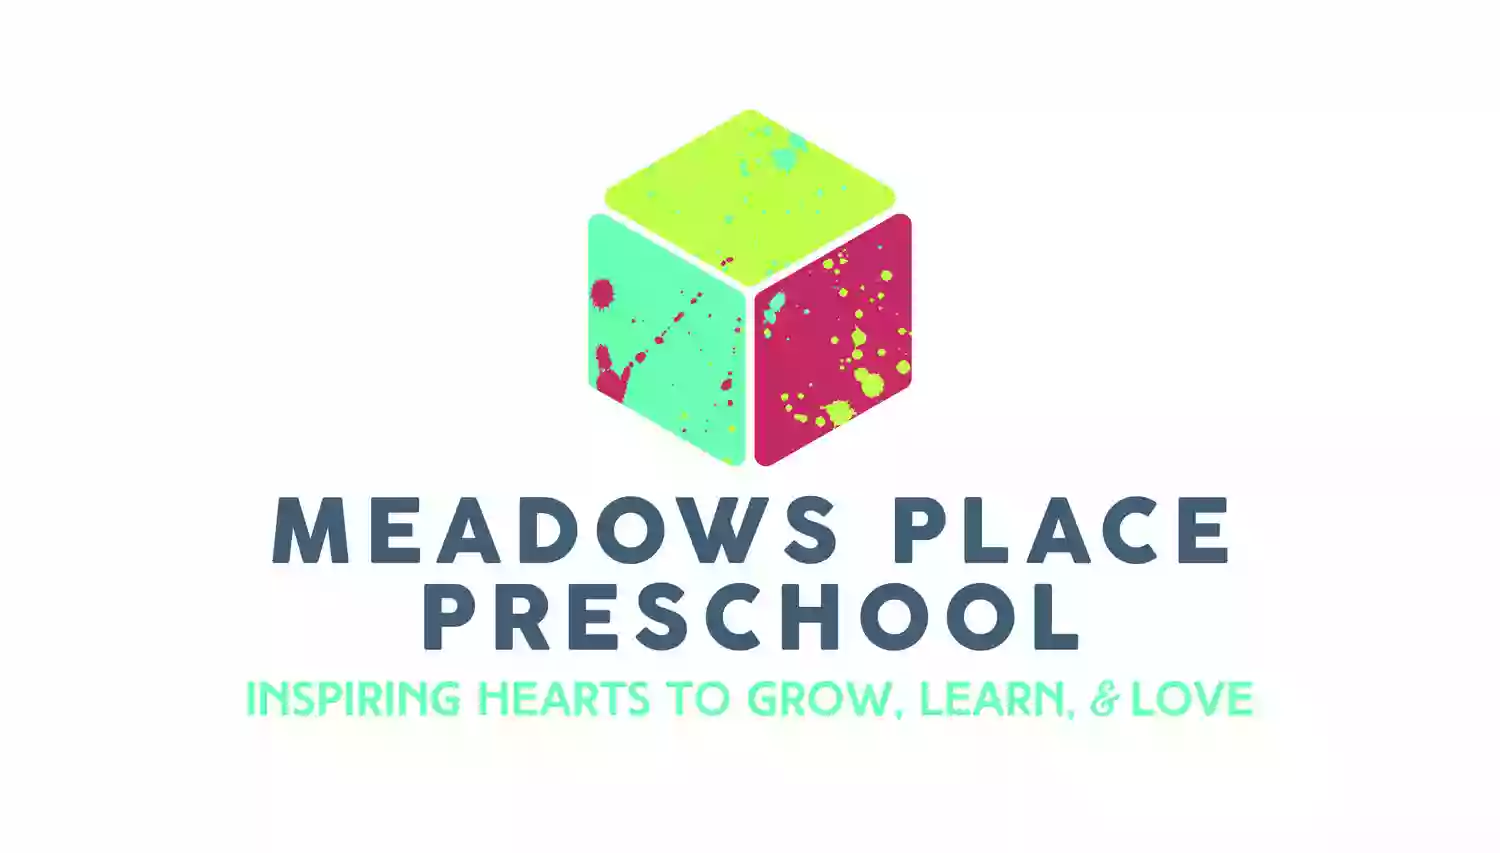 Meadows Place Preschool